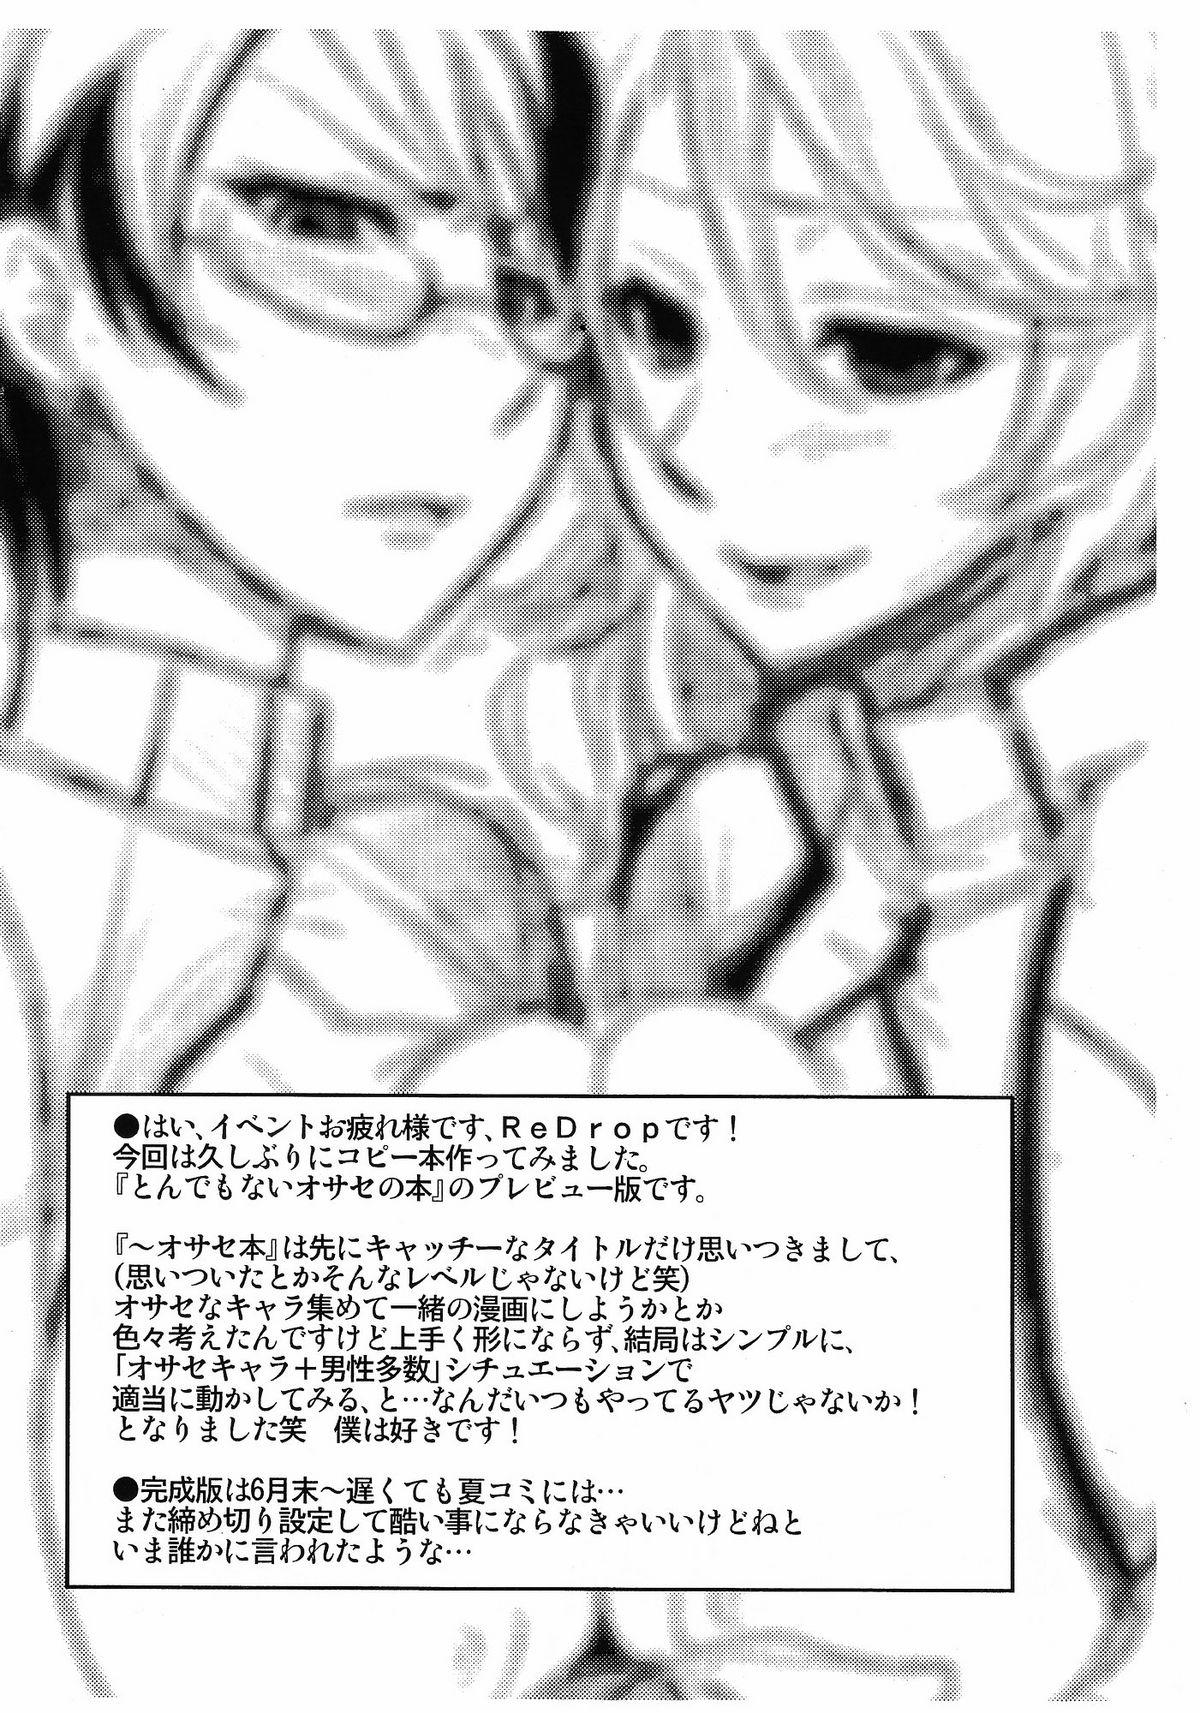 Ngentot Tondemonai Osase no Hon PREVIEW Ban - Gundam 00 Safada - Page 2